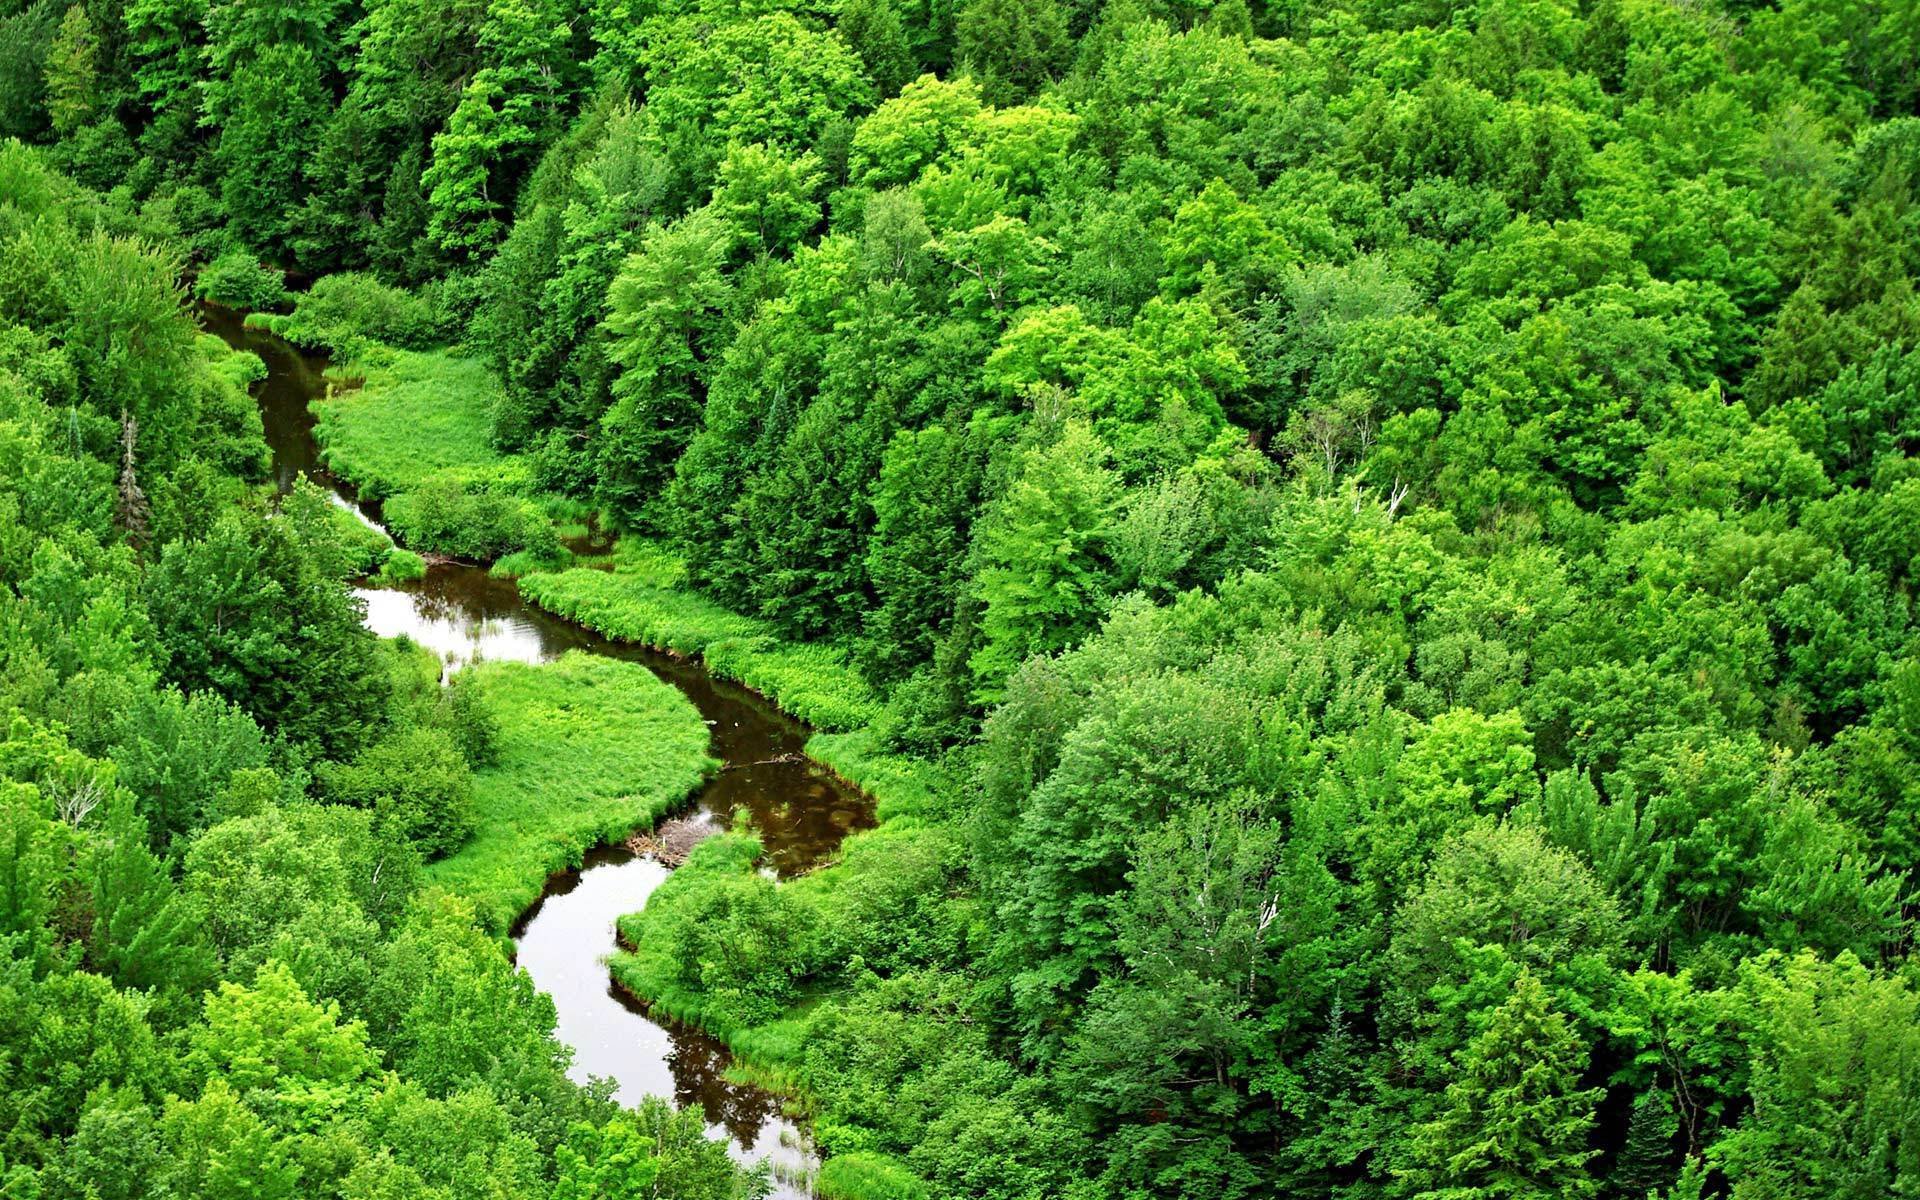 umwelt wallpaper,natürliche landschaft,natur,grün,wald,regenwald